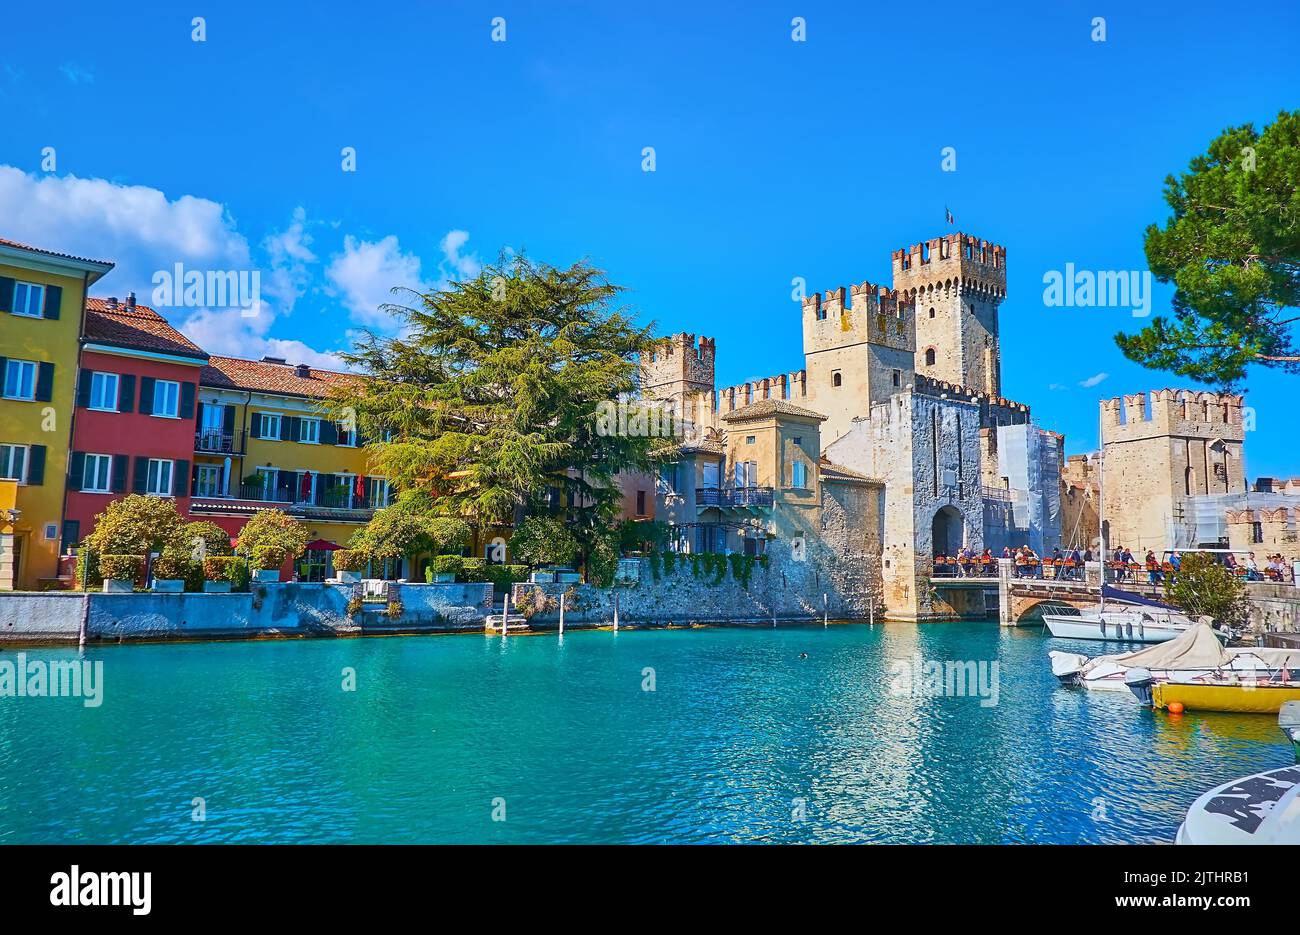 Der kleine Hafen von Sirmione Touristenort mit Blick auf schöne farbige Häuser, Hotels, Scaligero Castle und kleine Boote, die am Ufer, Lomba, vertäut Stockfoto